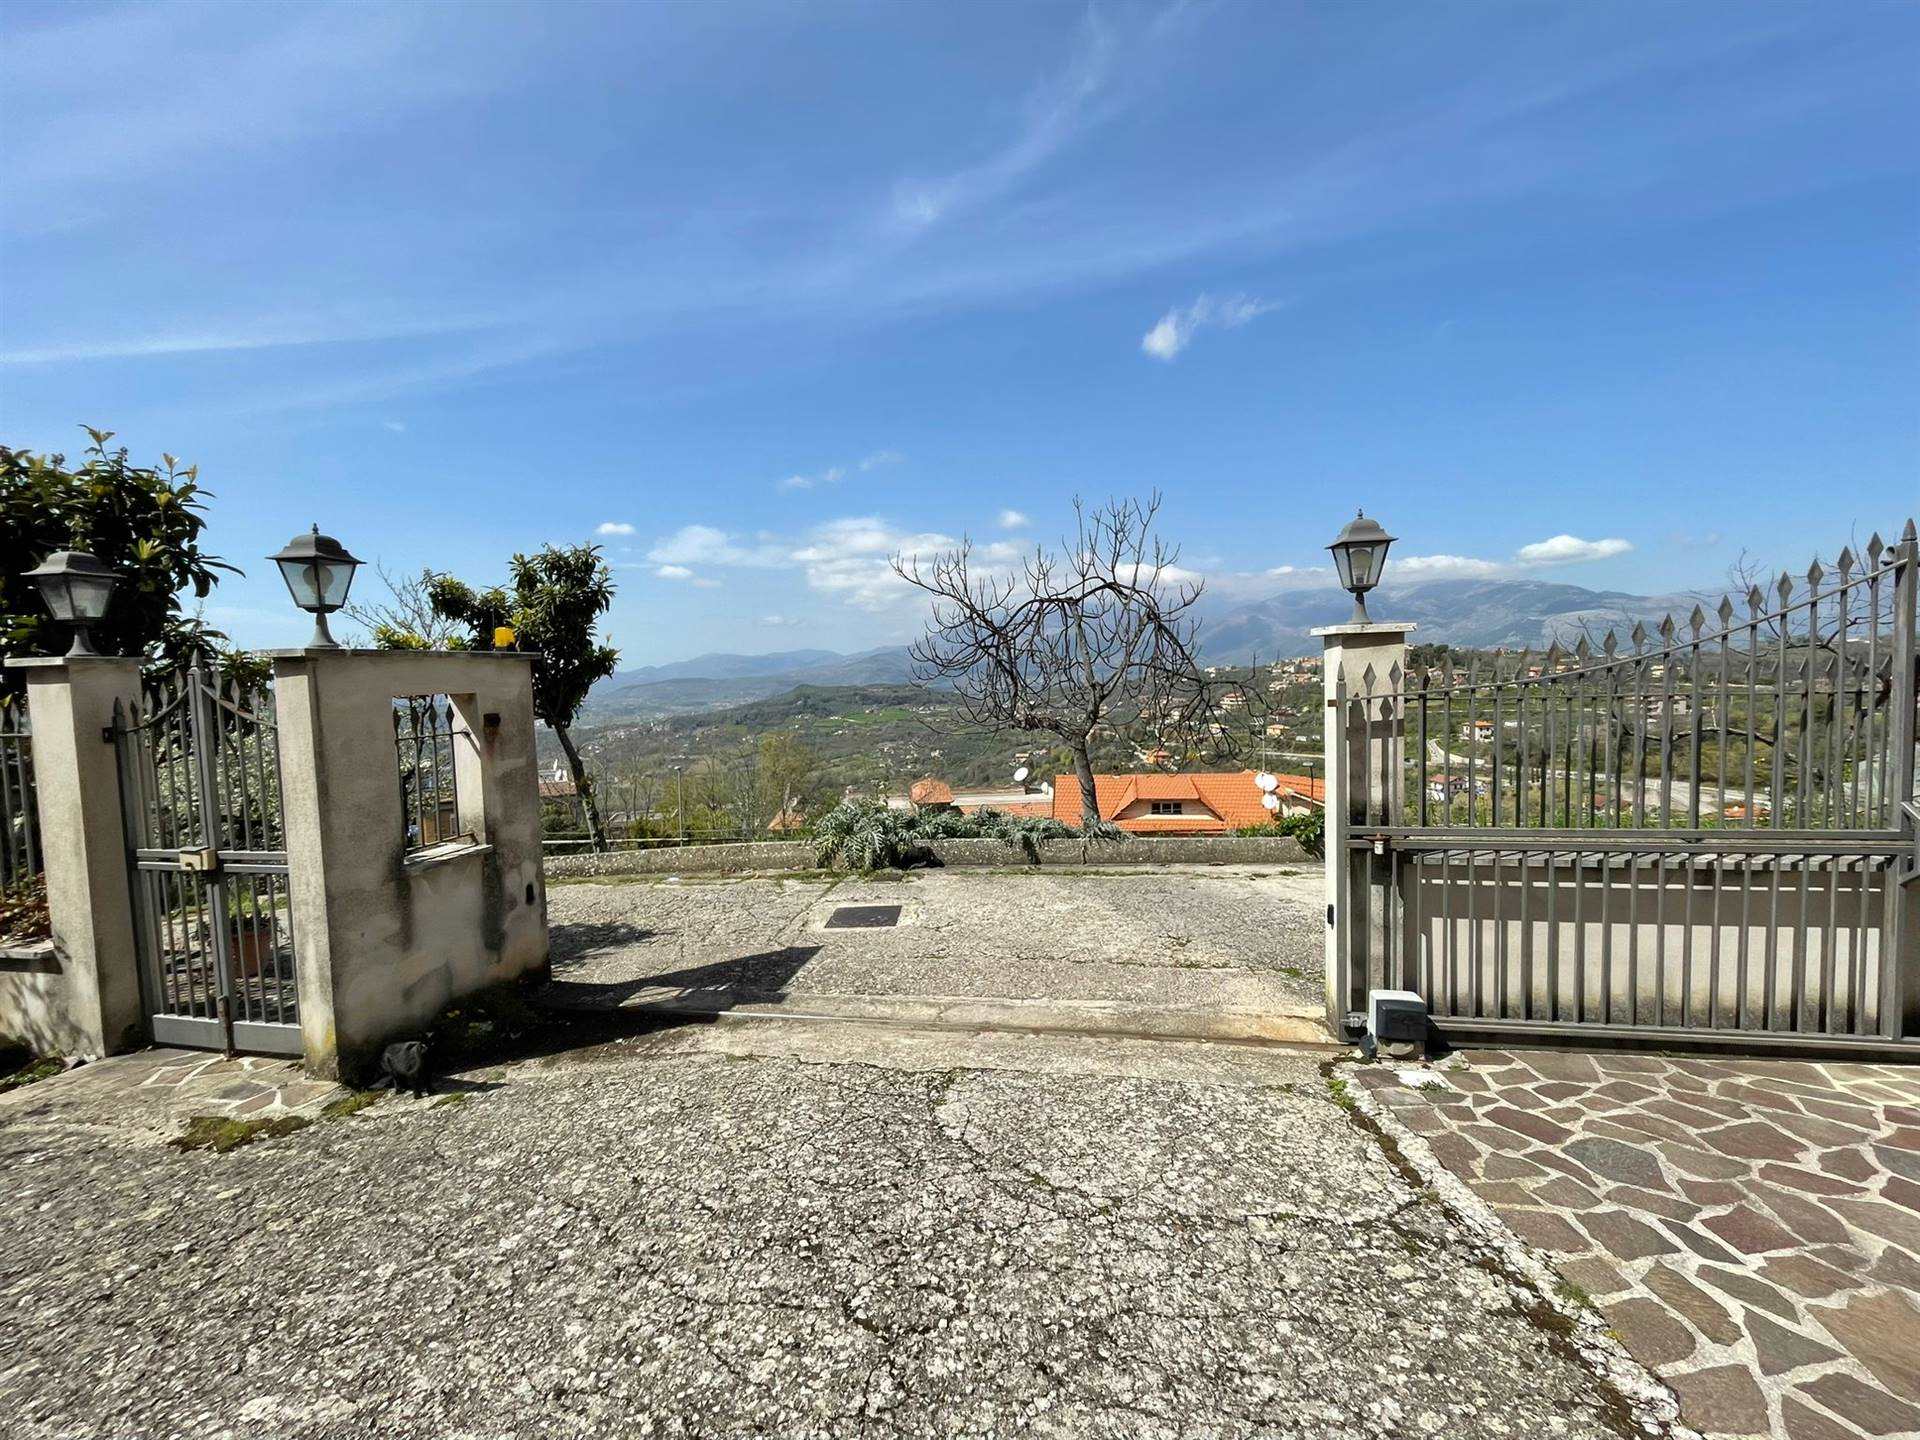 Villa Bifamiliare in vendita a Arpino, 5 locali, prezzo € 178.000 | CambioCasa.it